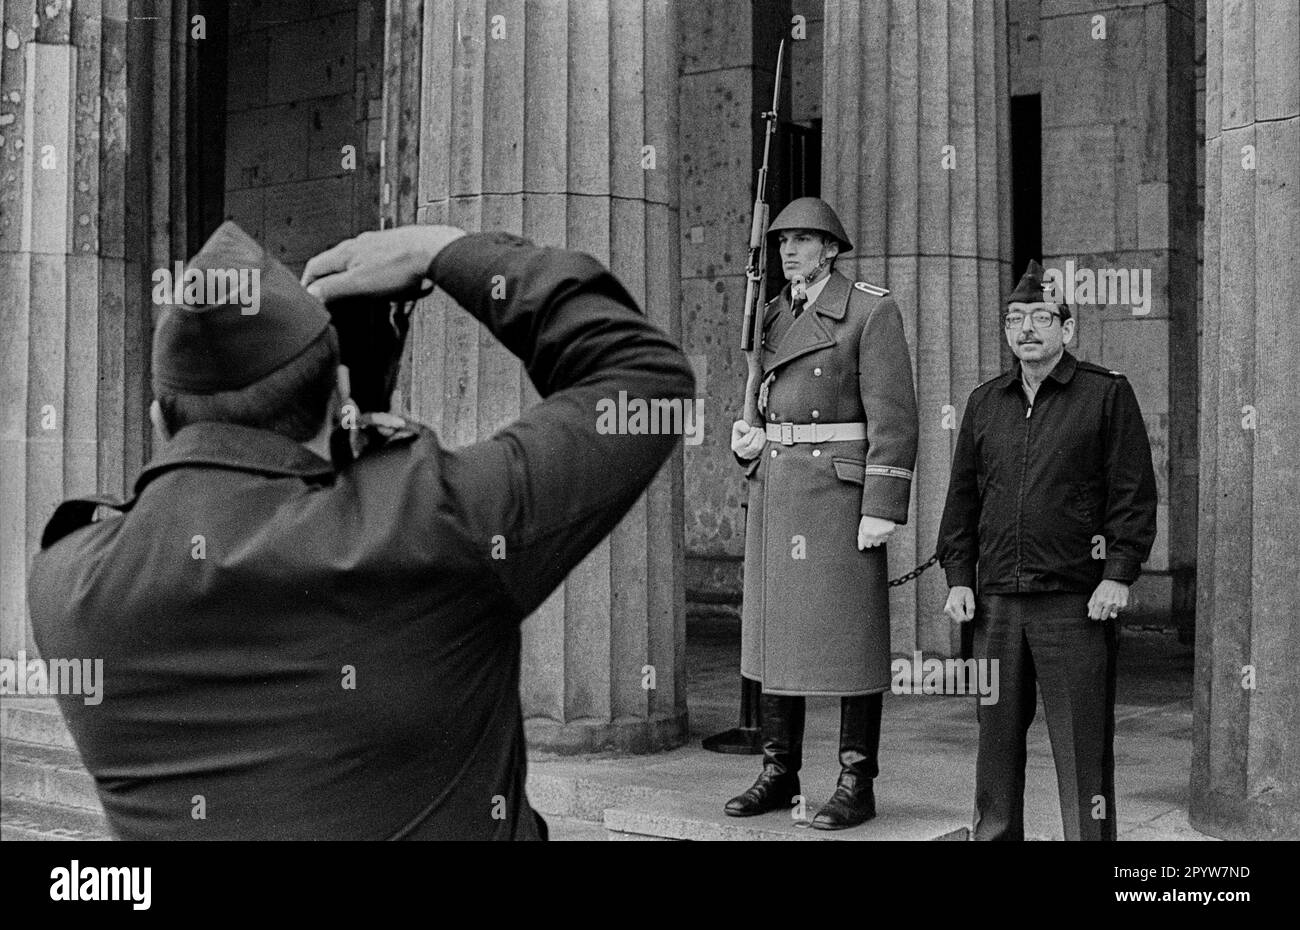 GDR, Berlin, 09.11.1988, le soldat américain a pris sa photo par son camarade à côté d'un soldat du régiment de garde Felix Dzerzhinsky devant la Neue Wache, n [traduction automatique] Banque D'Images